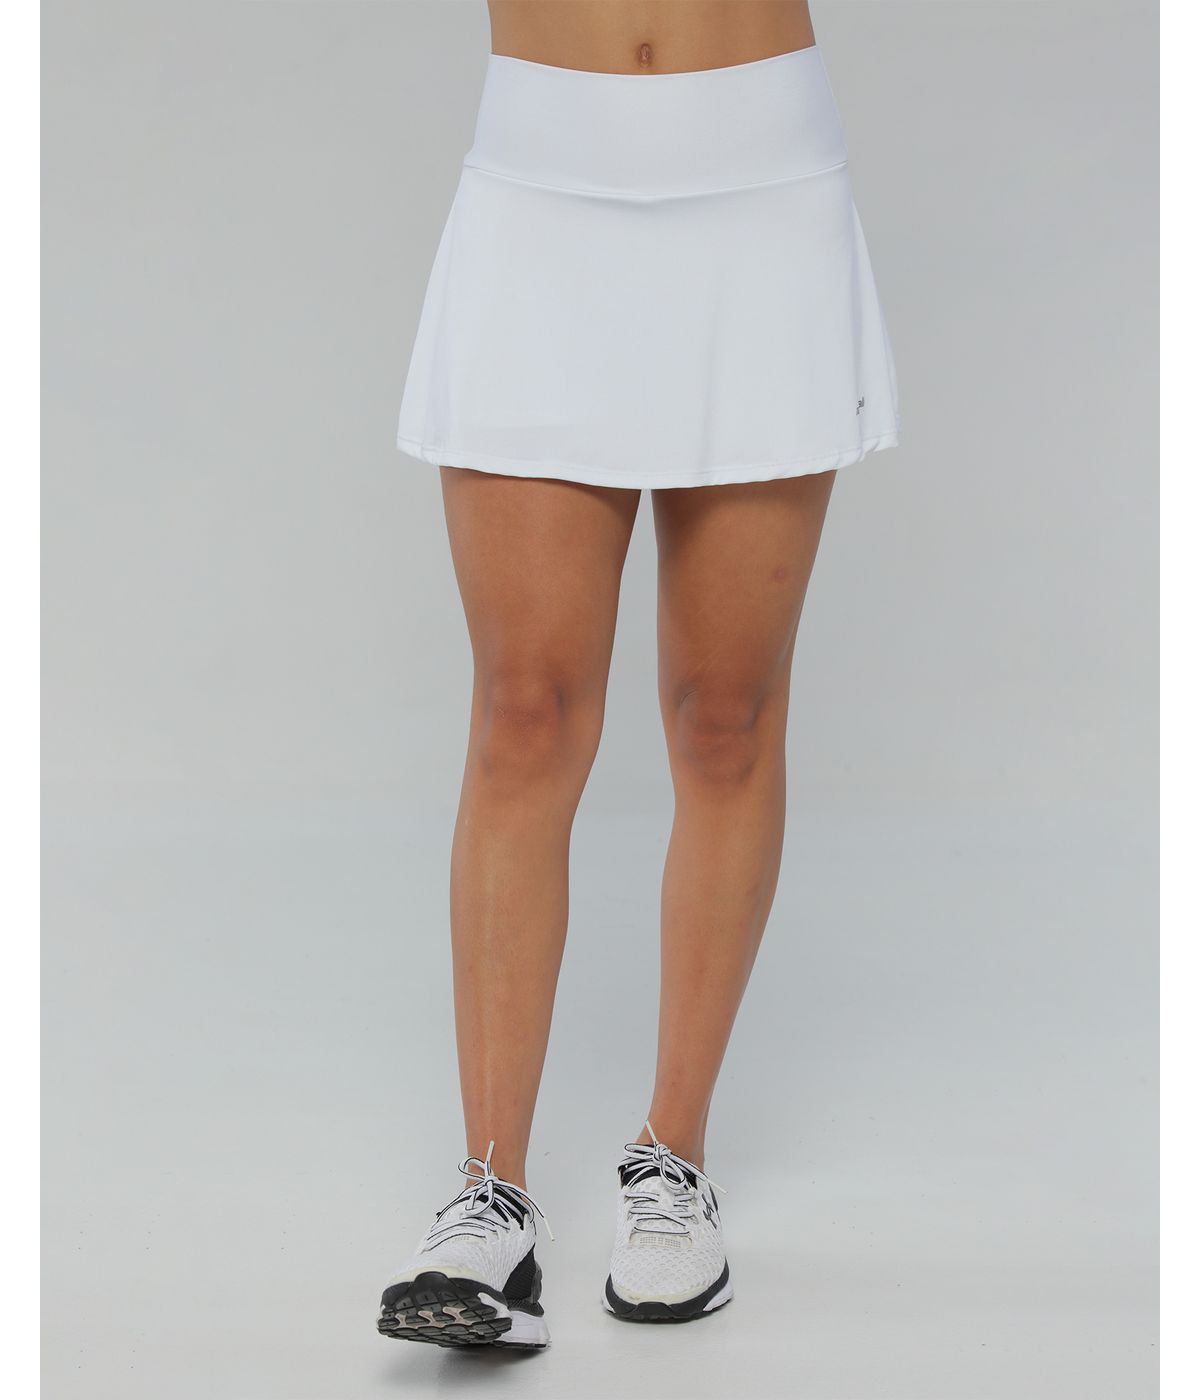 Falda Deportiva Con Licra Interior, Color Blanco Para Mujer - racketball  movil